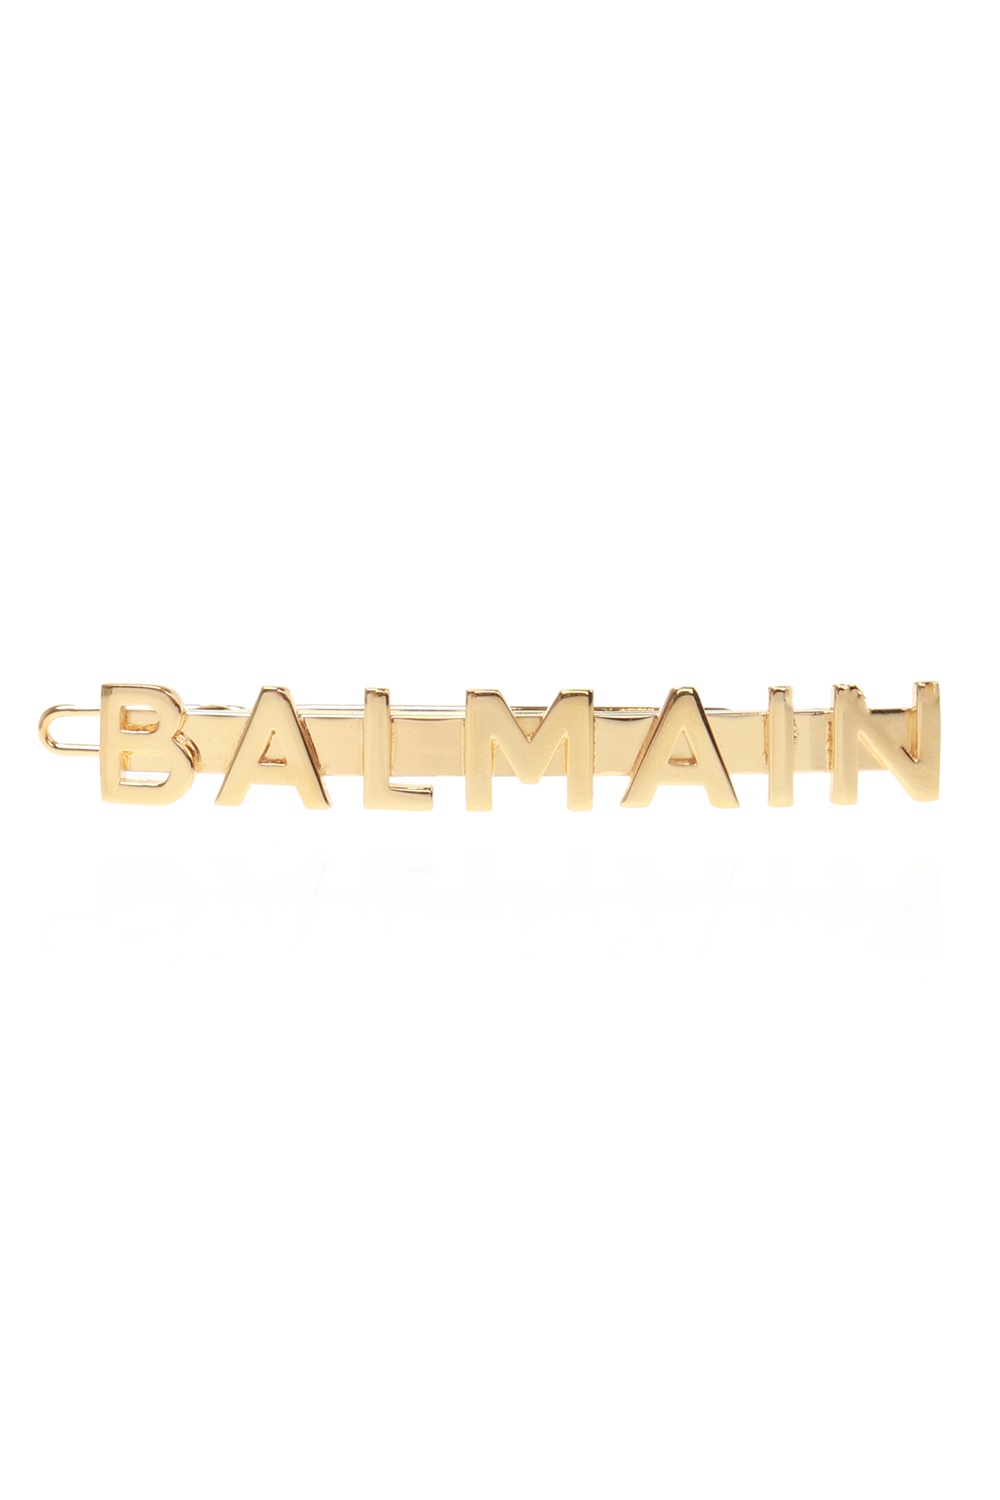 Balmain Hair clip with logo